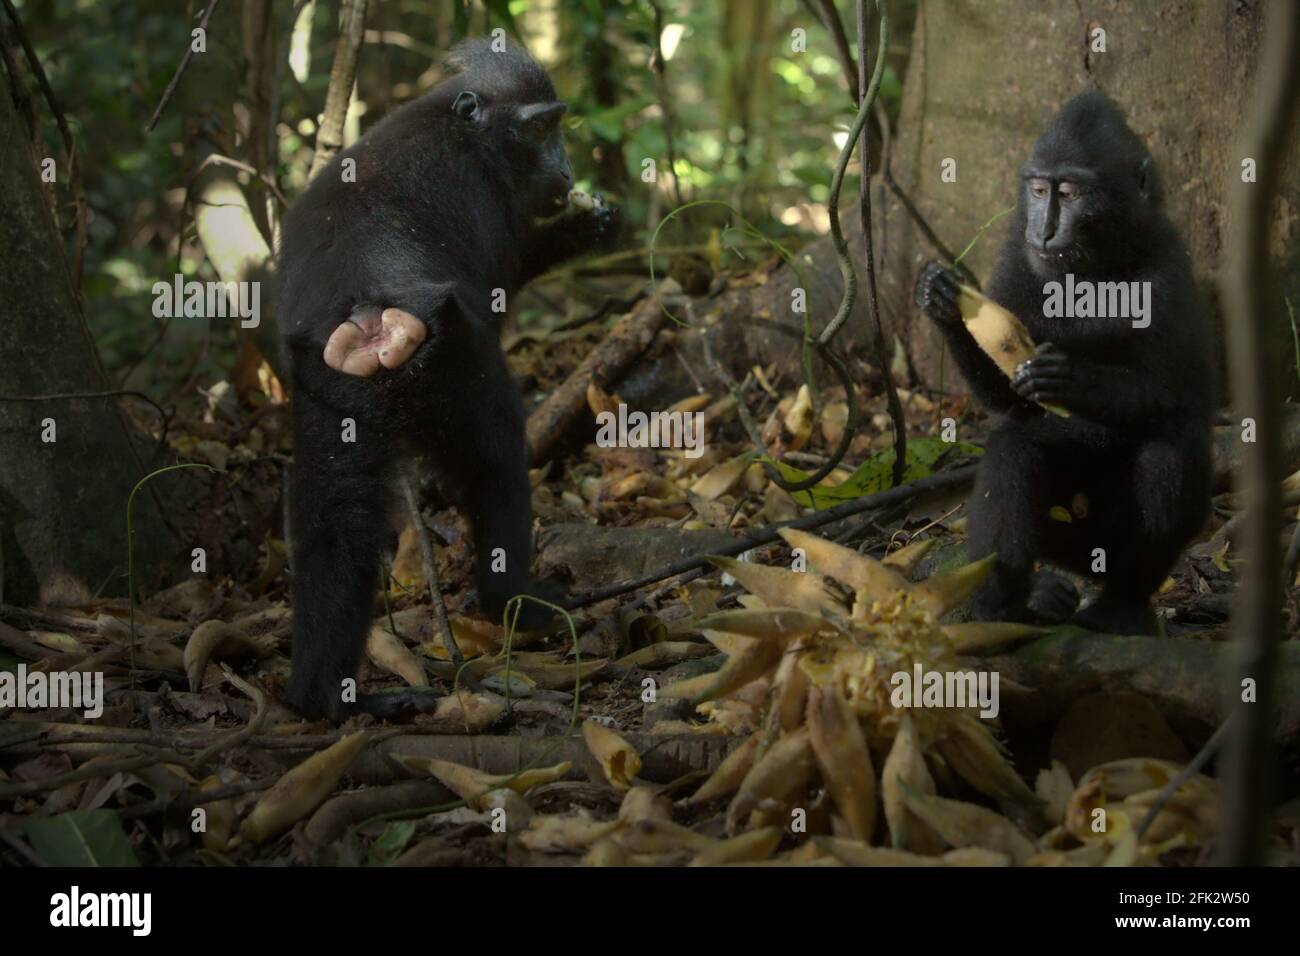 I giovani di macaco crestato nero di Sulawesi (Macaca nigra) si nutrono di frutta liana mentre sono seduti sul pavimento della foresta nella Riserva Naturale di Tangkoko, Nord Sulawesi, Indonesia. Piantare alberi da frutto nell'area tra la foresta e il paesaggio agricolo contribuirebbe a ridurre i conflitti tra scimmie e umani, secondo Reyni Palohoen, coordinatore del progetto di Selamatkan Yaki (Save Yaki) all'inizio di questo mese, rispondendo all'invasione "scimmia" delle terre agricole nella reggenza di Minahasa del Sud, nel Nord Sulawesi, Indonesia. Foto Stock